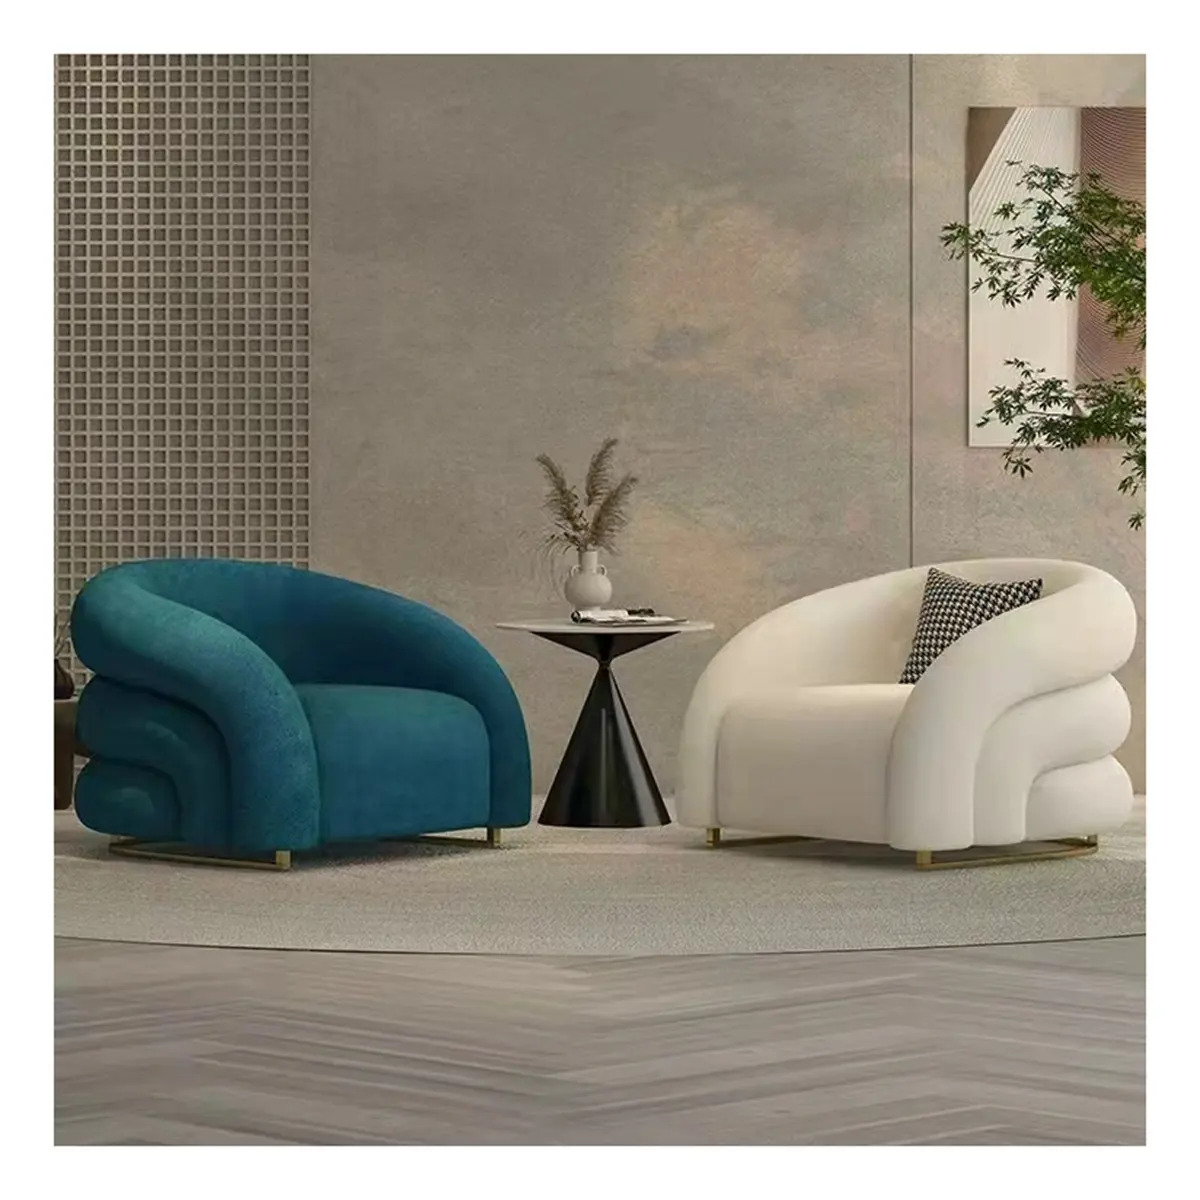 Foshan mobiliário sotaque cadeira conforto poltrona designer preguiçoso sofá cadeira villa sala de estar moderno luxo lazer espreguiçadeira